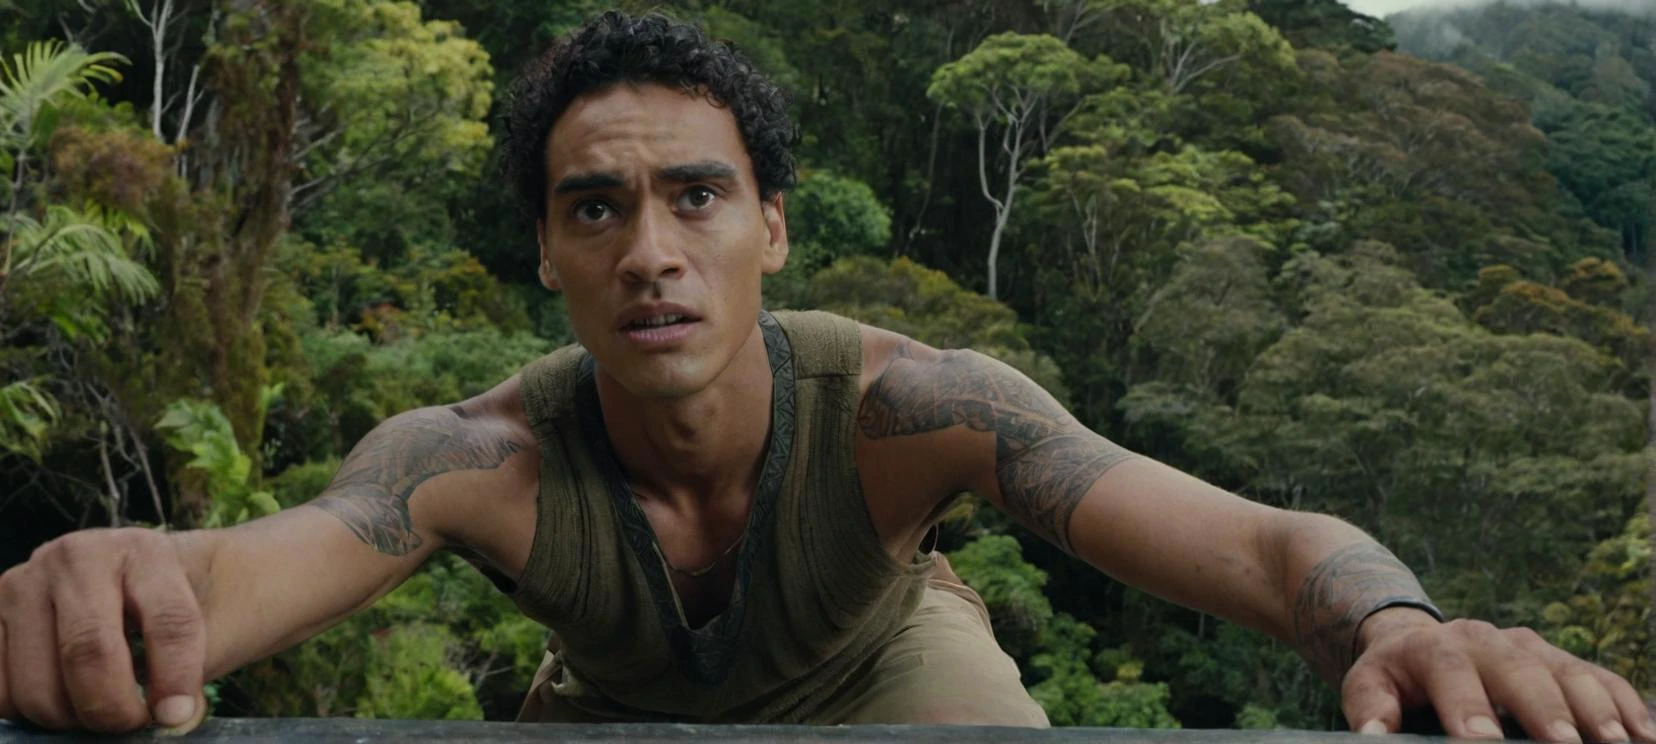 背の高い人の自撮り写真の映画, 若い, ニュージーランドの森の岩棚に立つ痩せたマオリ族のハーフ男性, 少し心配そうな表情を浮かべて.



映画のような, 映画のスチール写真